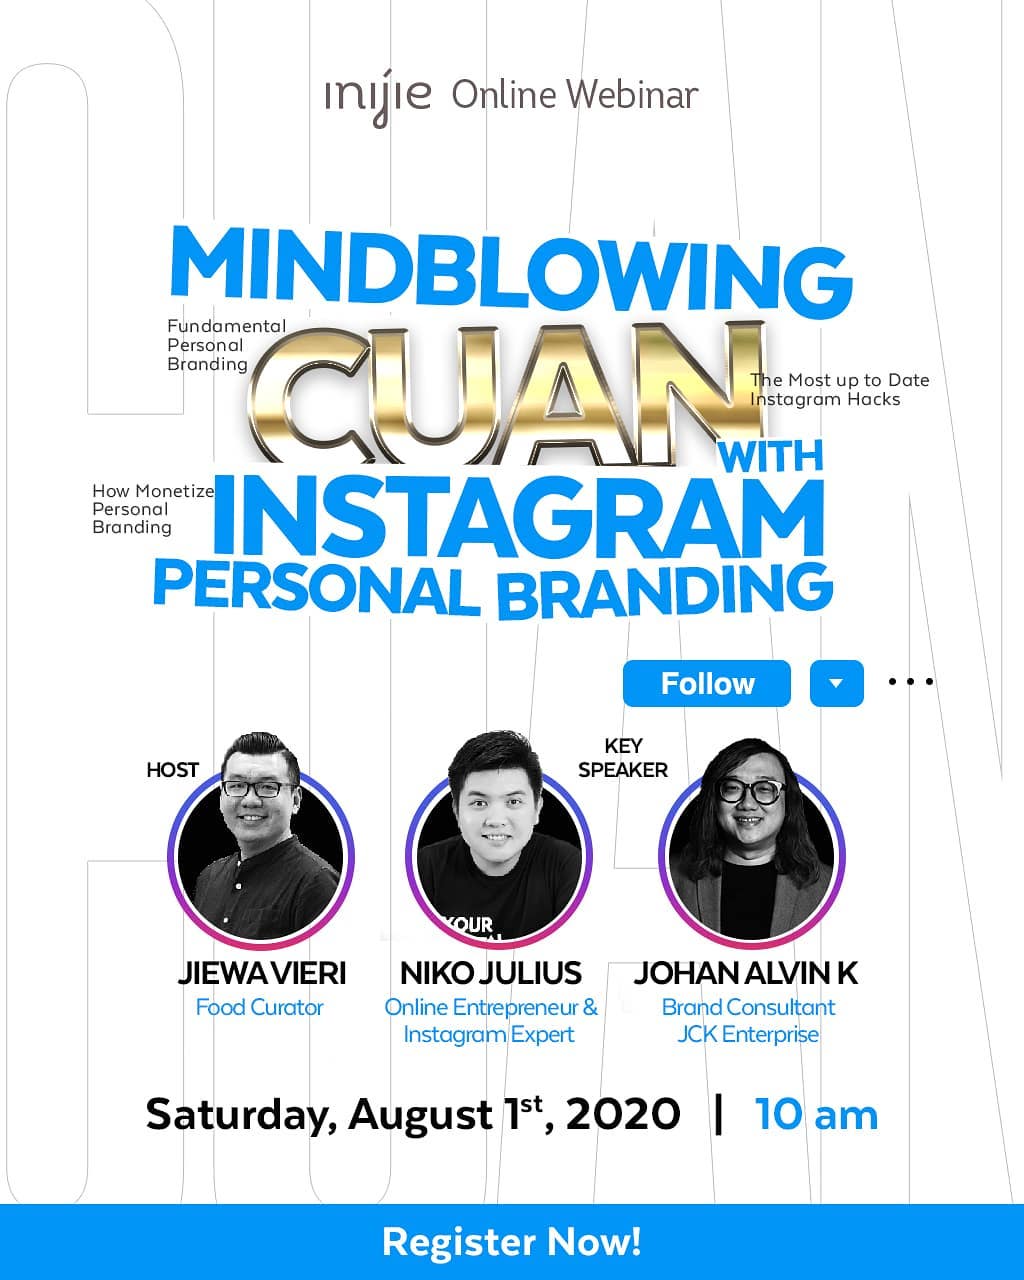 INIJIE Academy - Mindblowing Cuan Instagram Personal Branding